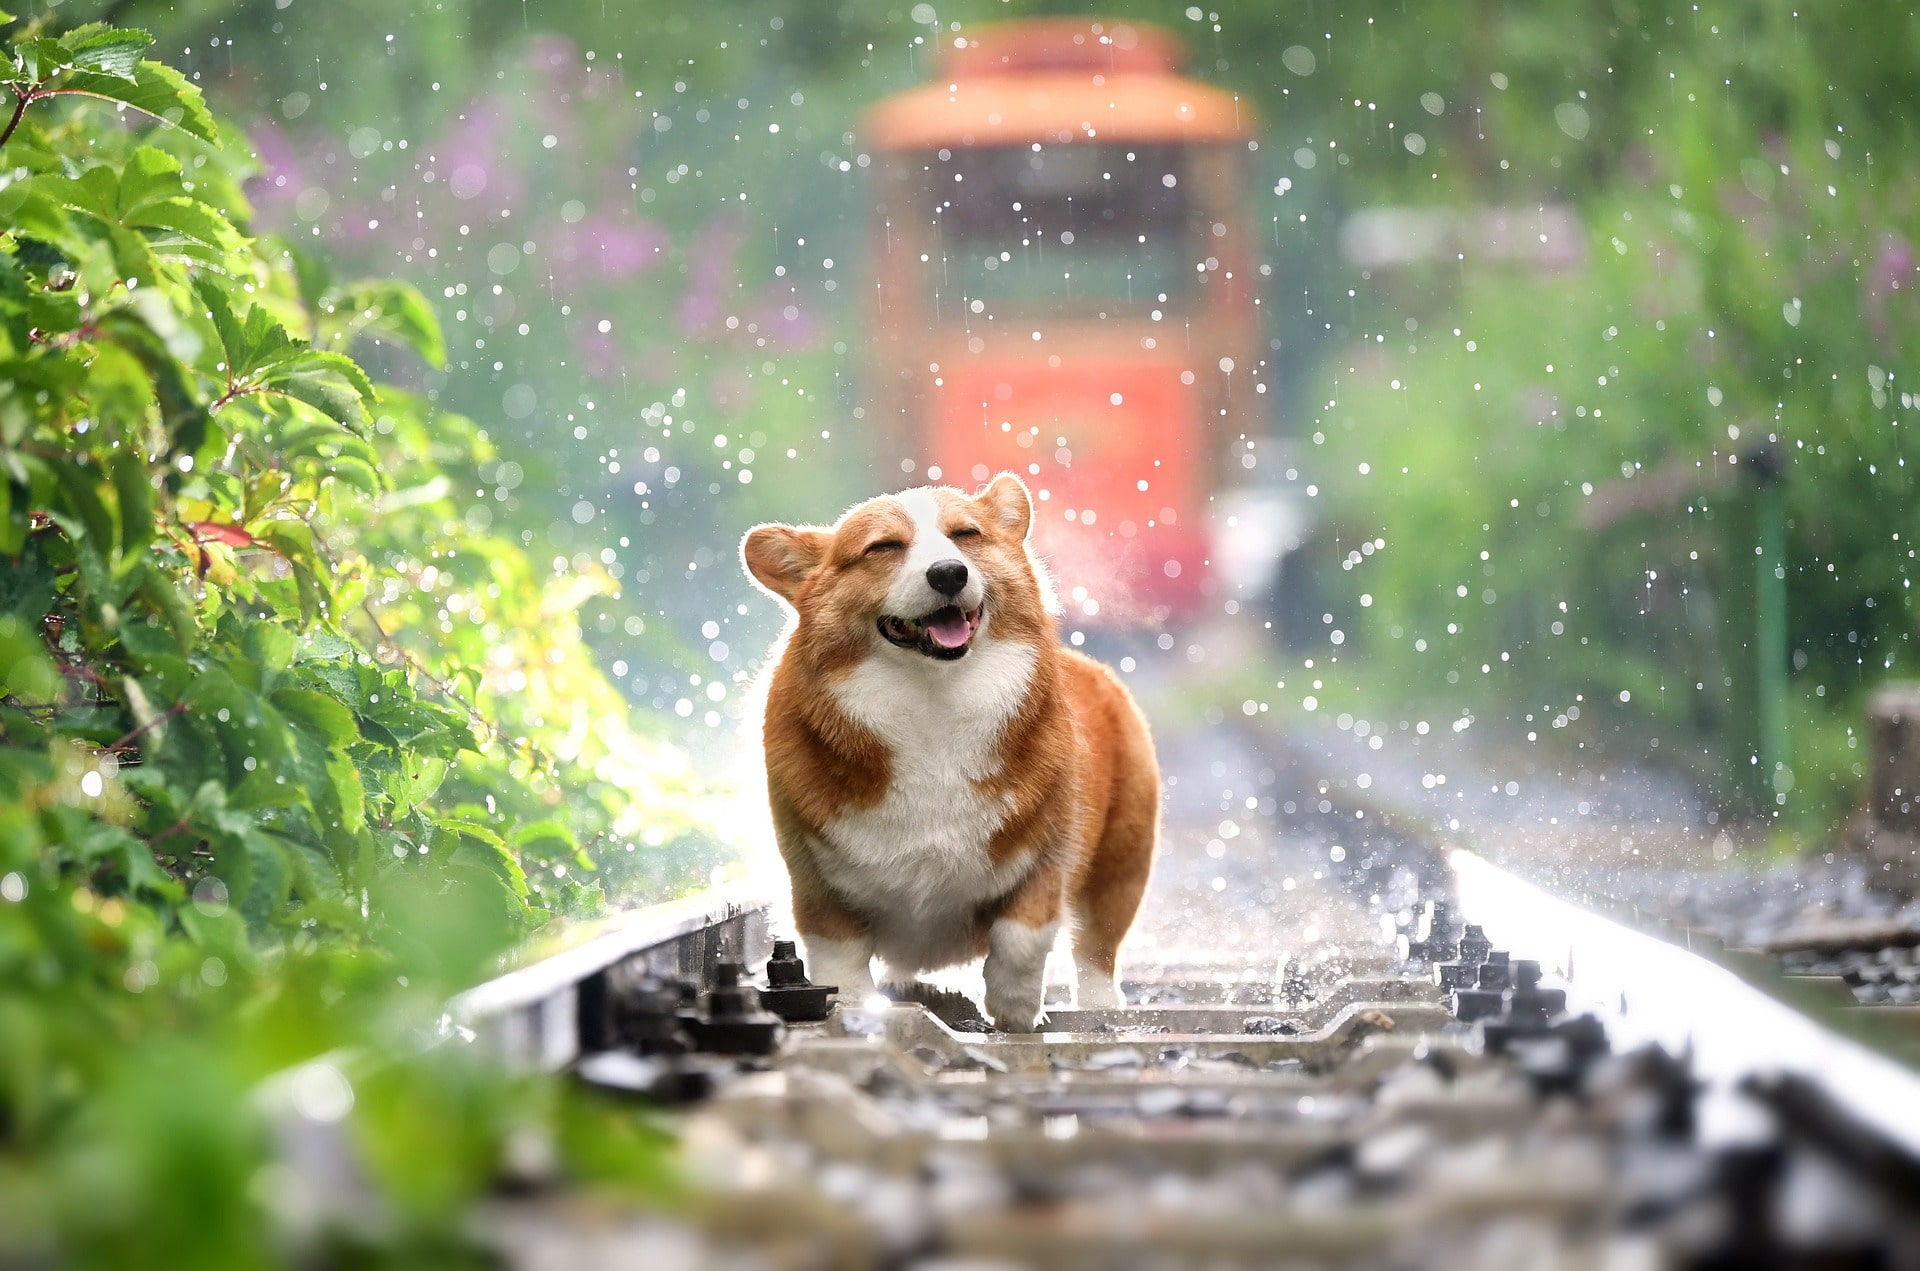 A corgi walking along railroad tracks, enjoying the rain.